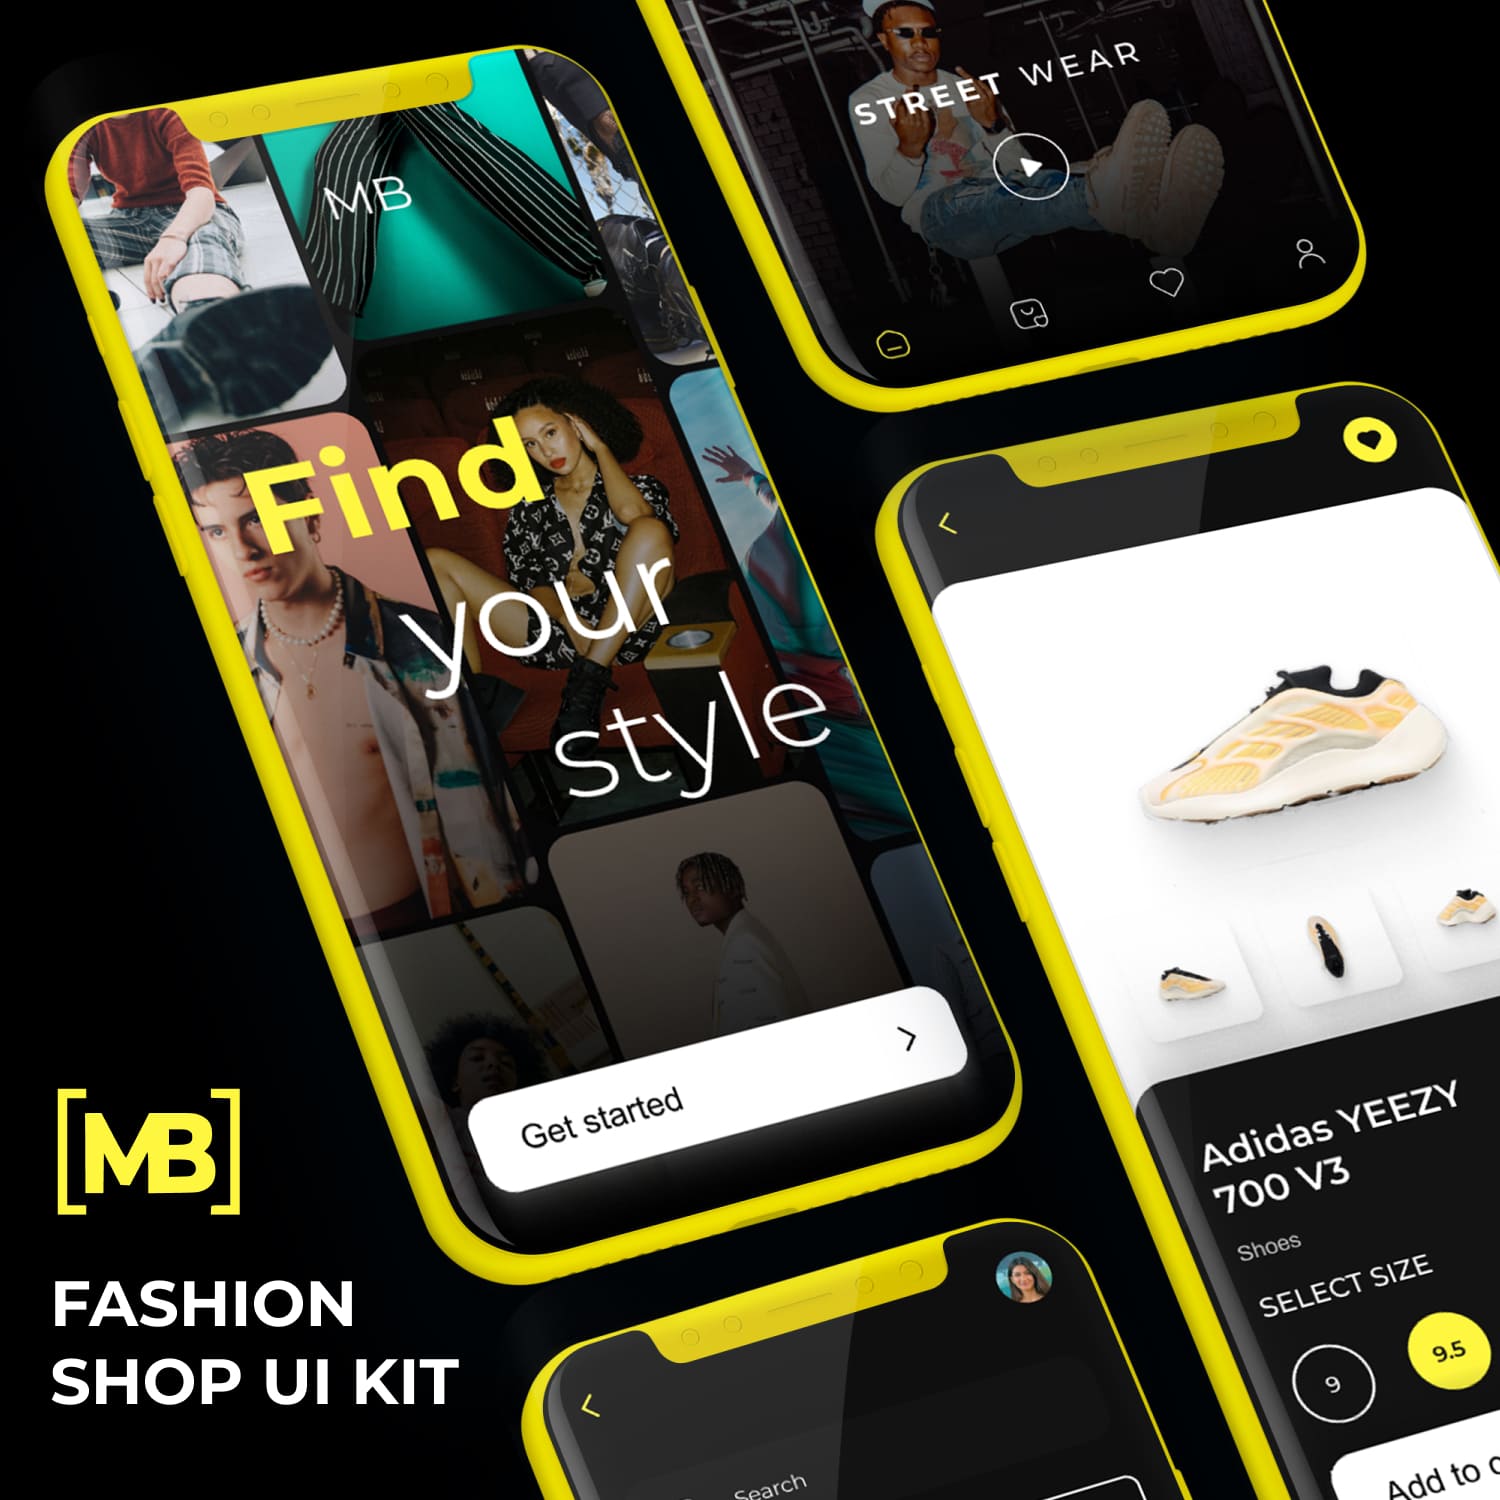 Fashion Shop UI Kit.